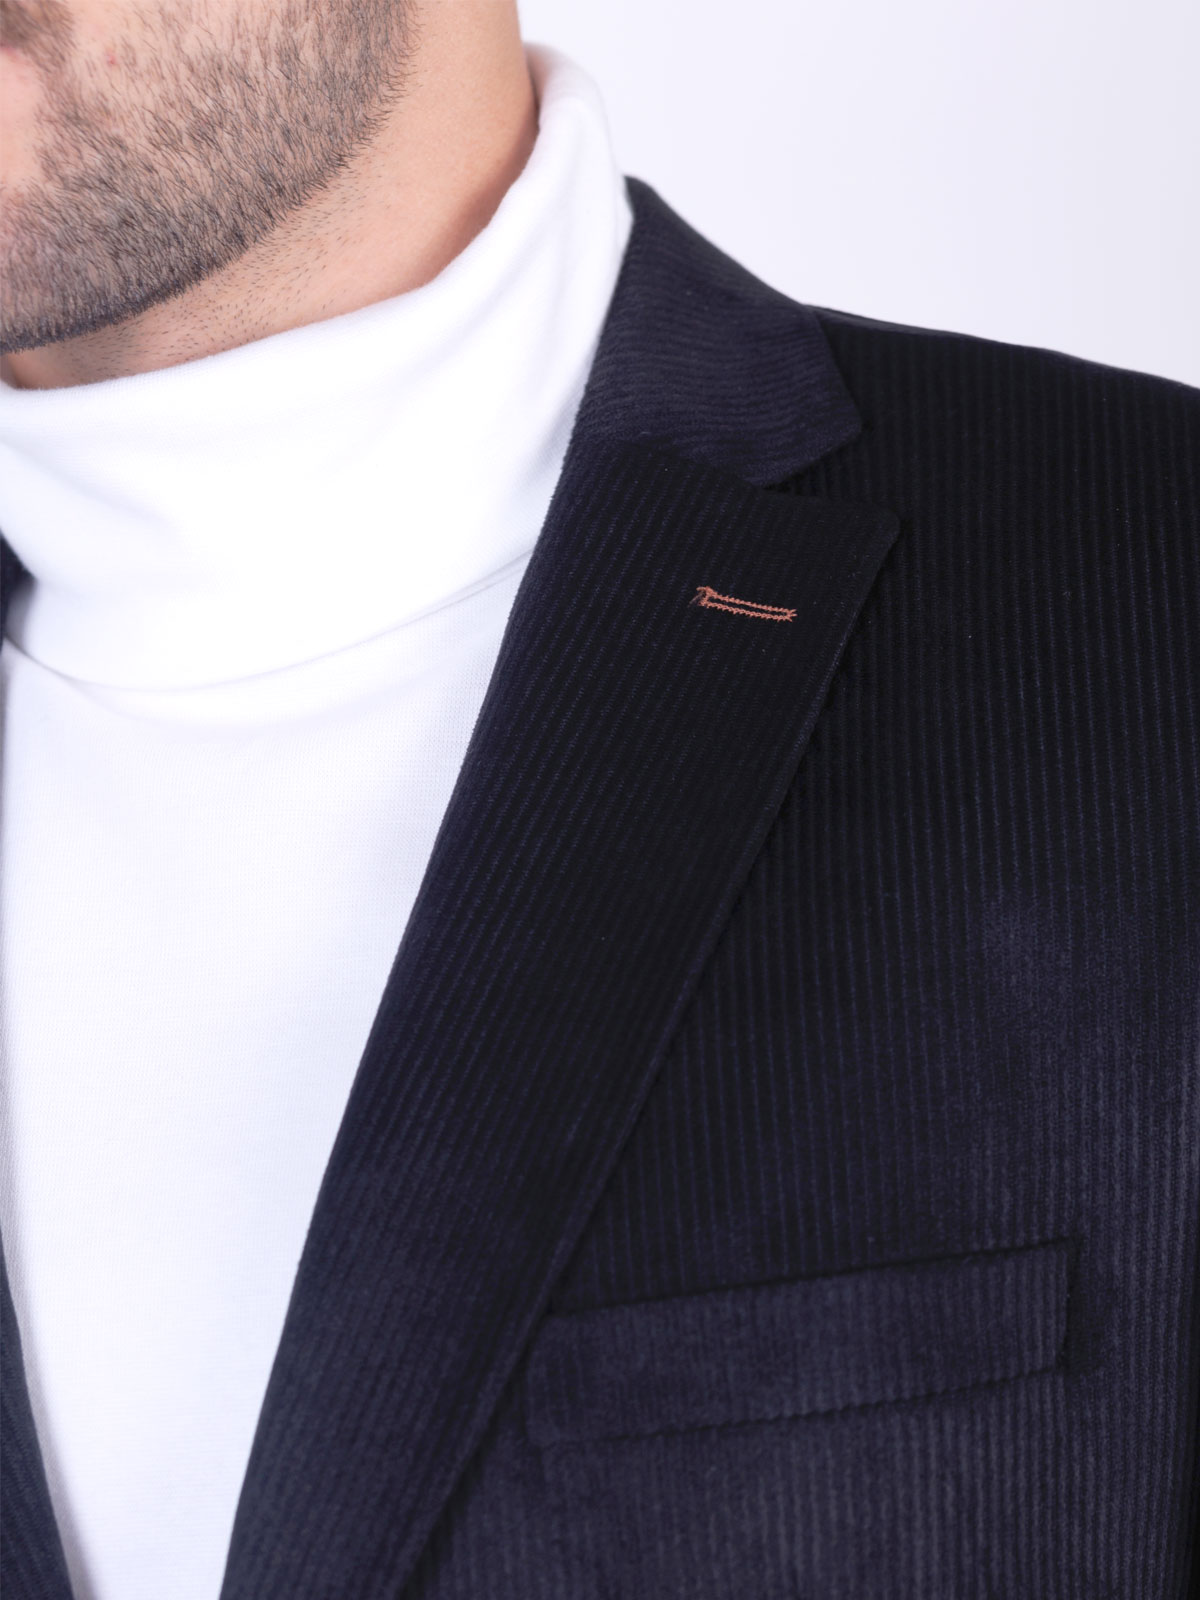 Jachetă pentru bărbați cu dungi negre - 61102 € 83.80 img2